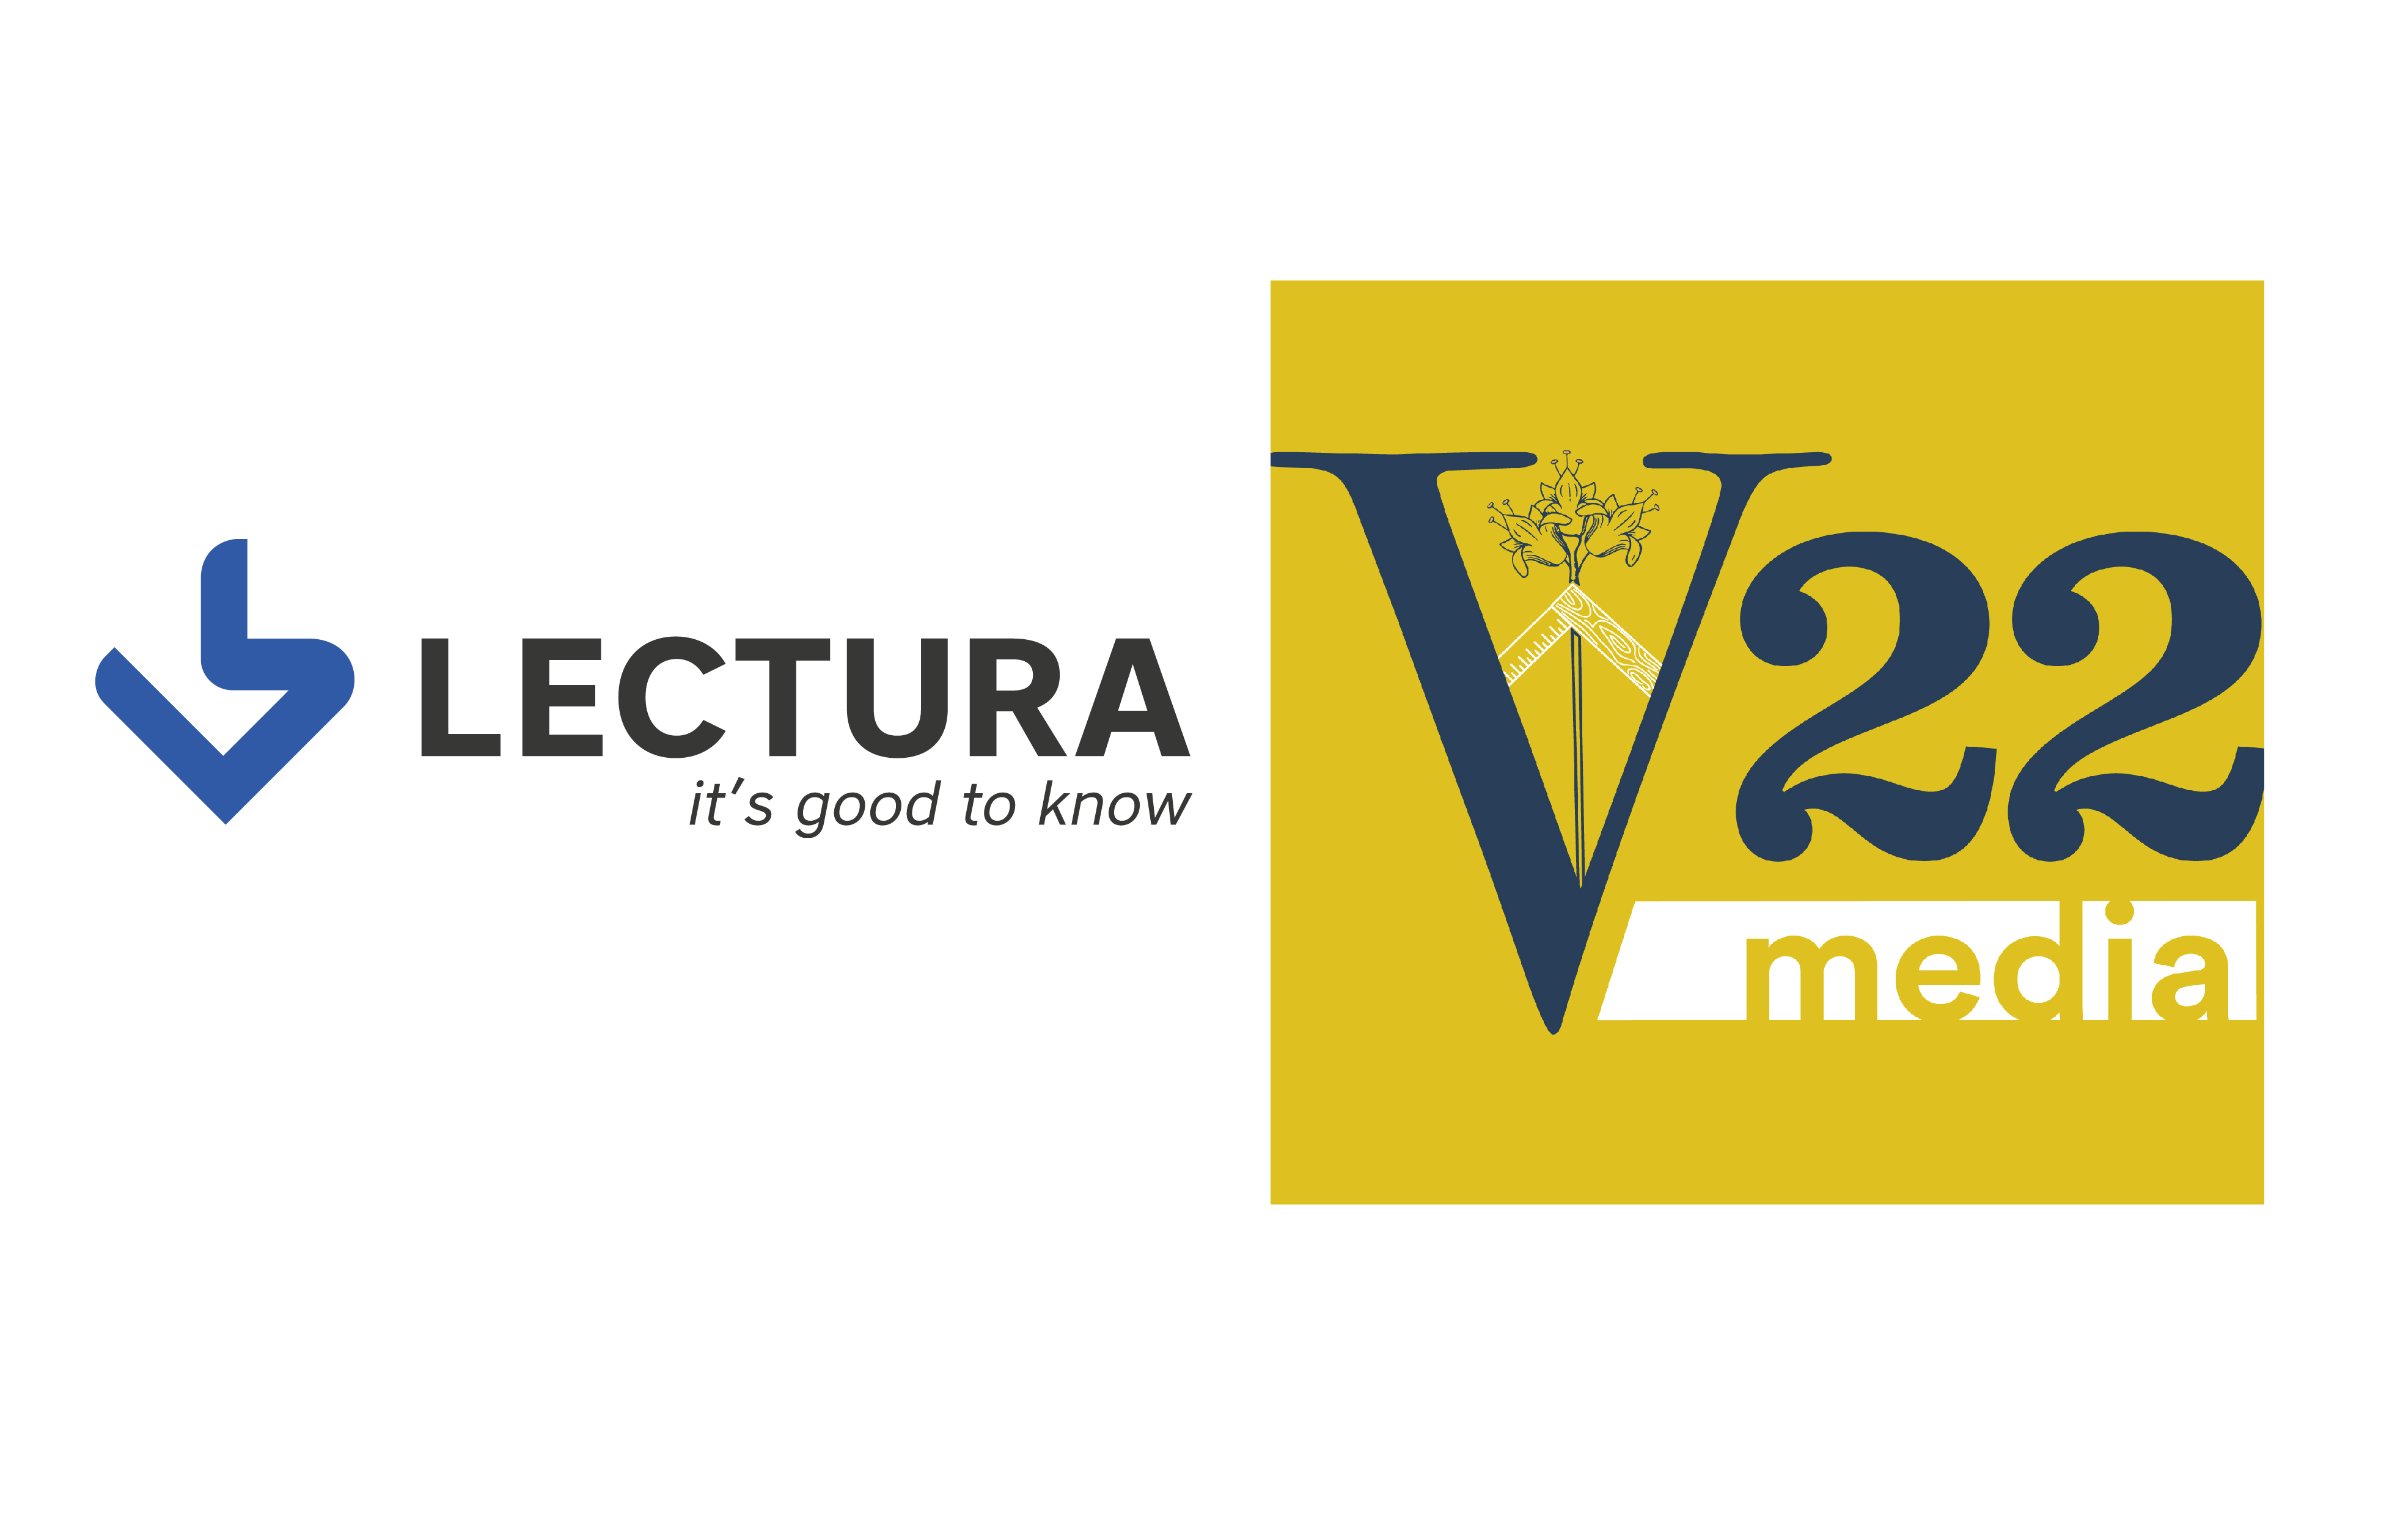 LECTURA & V22 media